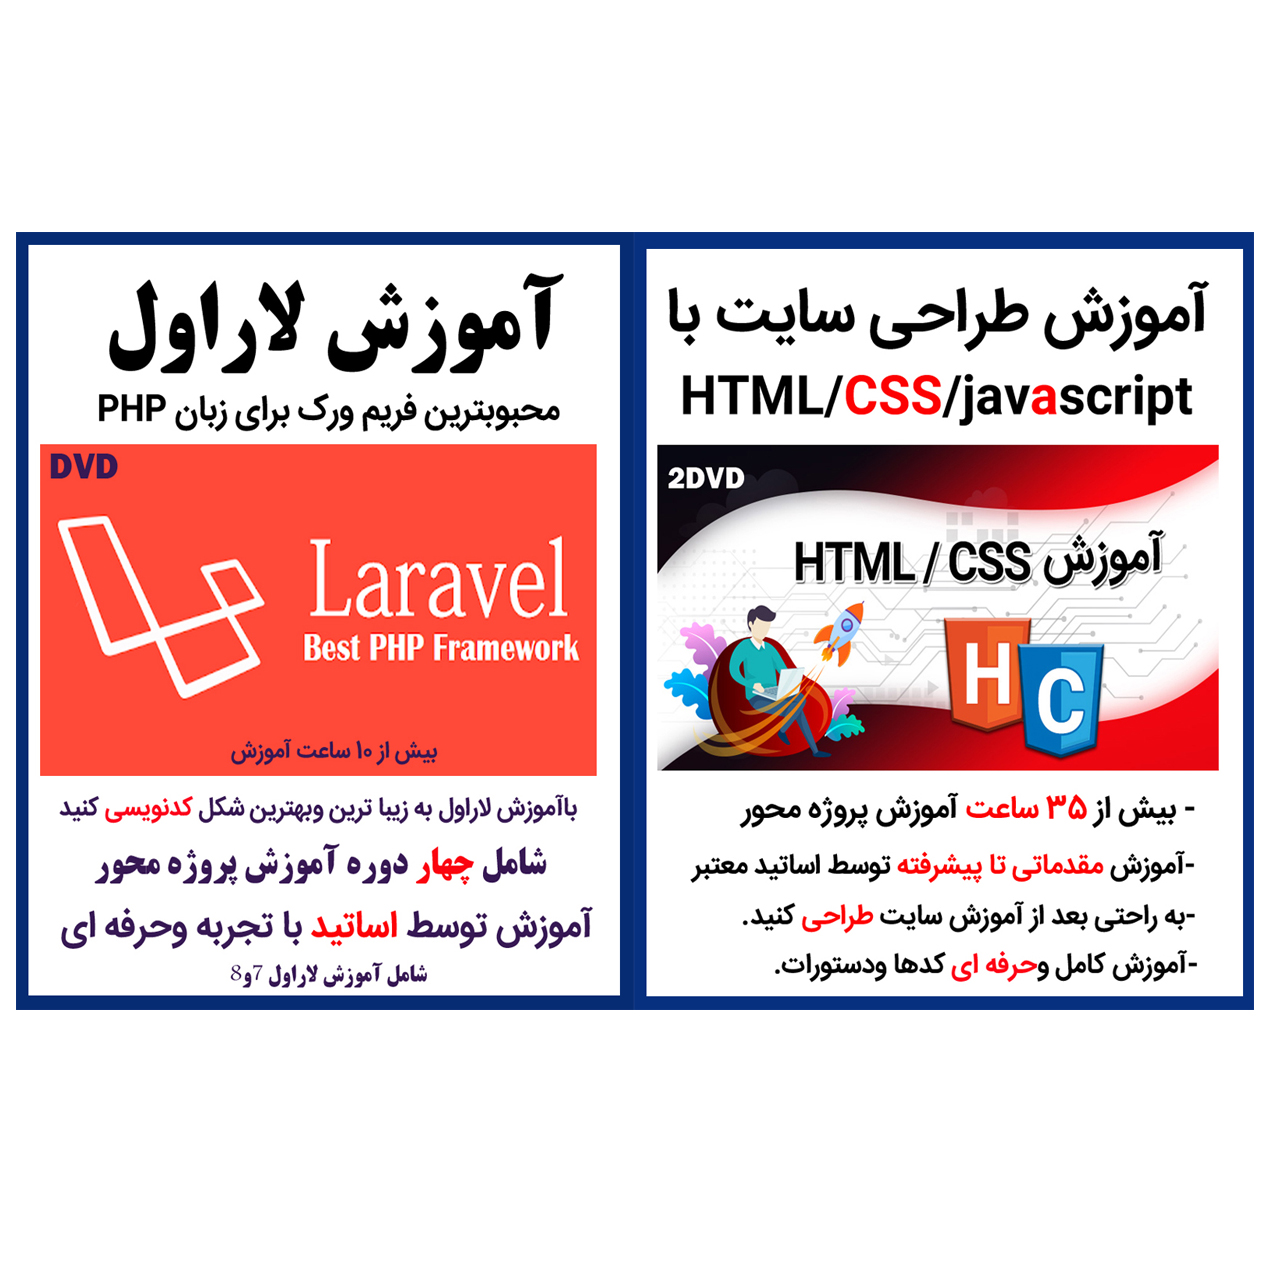 نرم افزار آموزش طراحی سایت با css,html,javascript نشر کاران به همراه نرم افزار آموزش لاراول نشر کاران